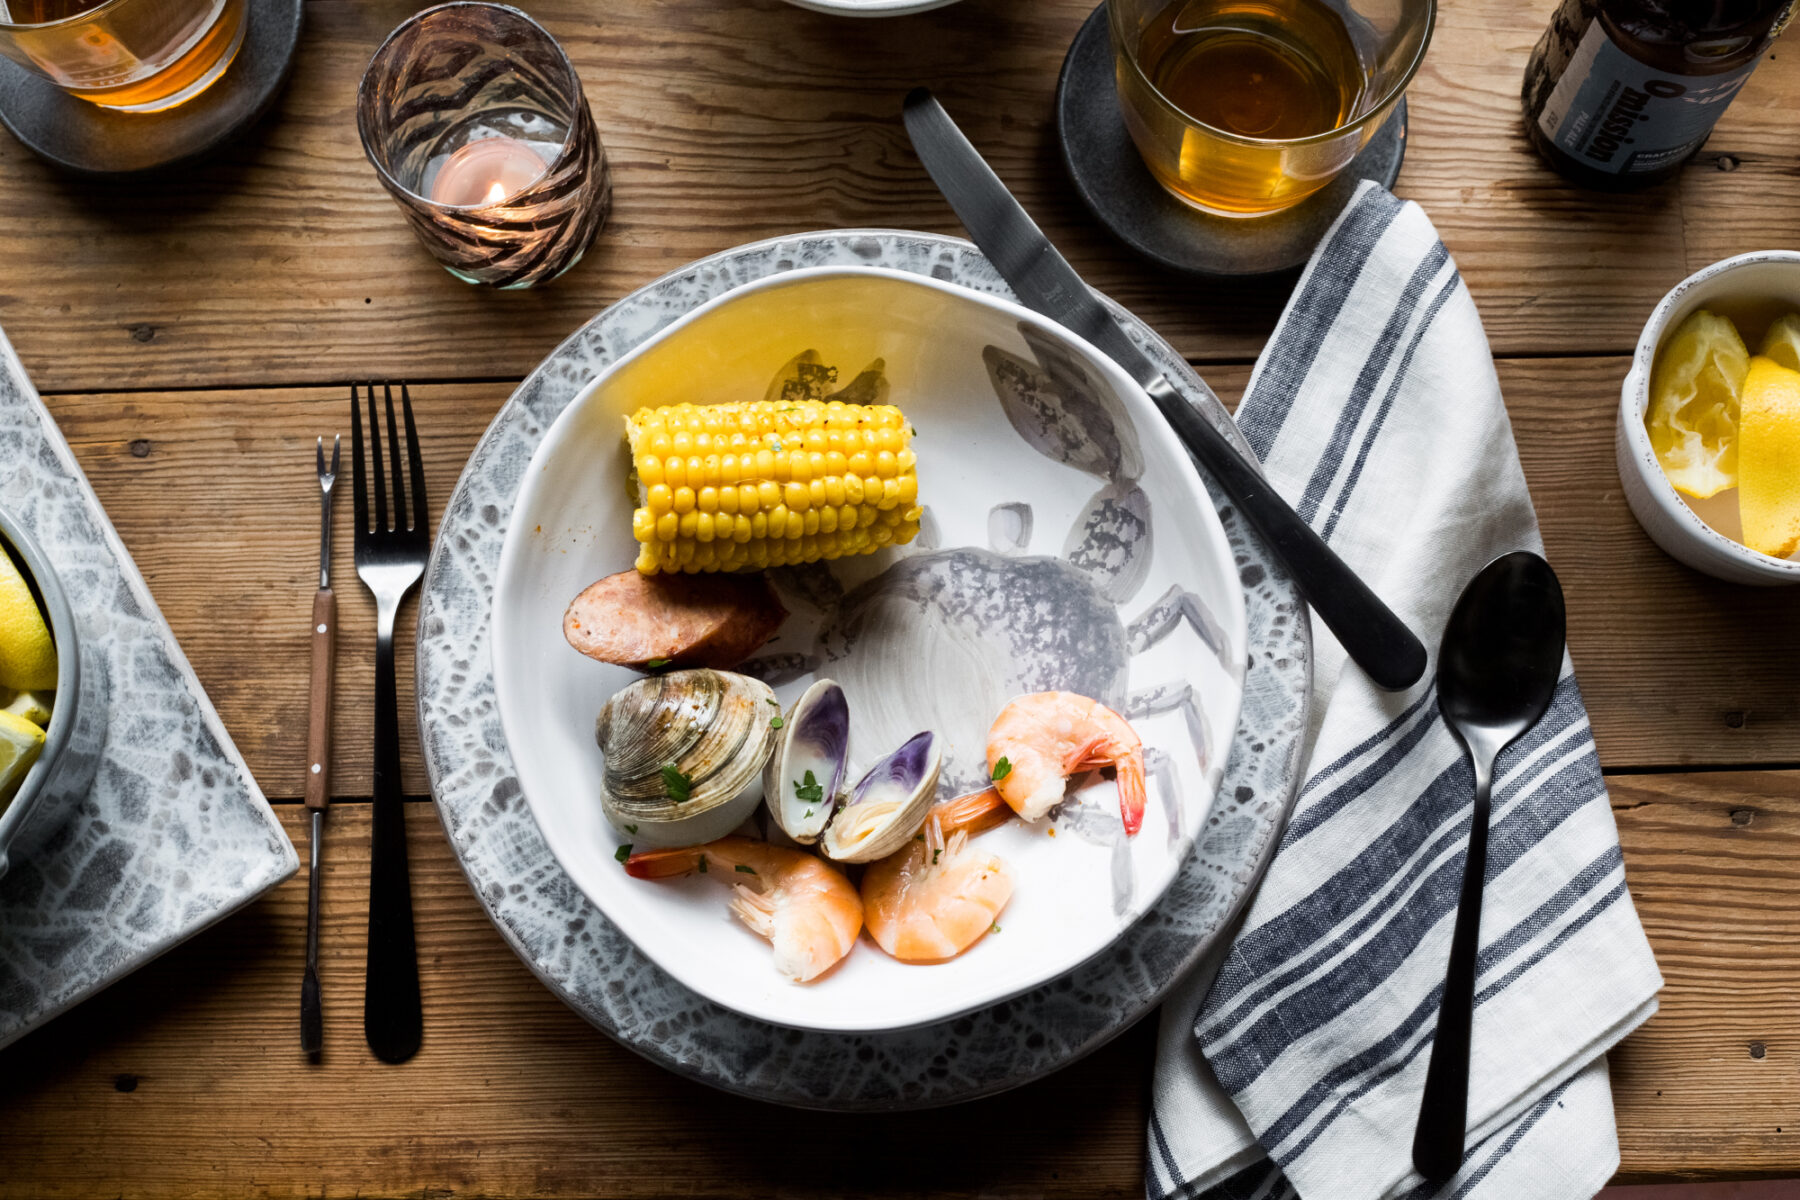 VIETRI - Gray Seafood Dinnerware Closeup of Plate